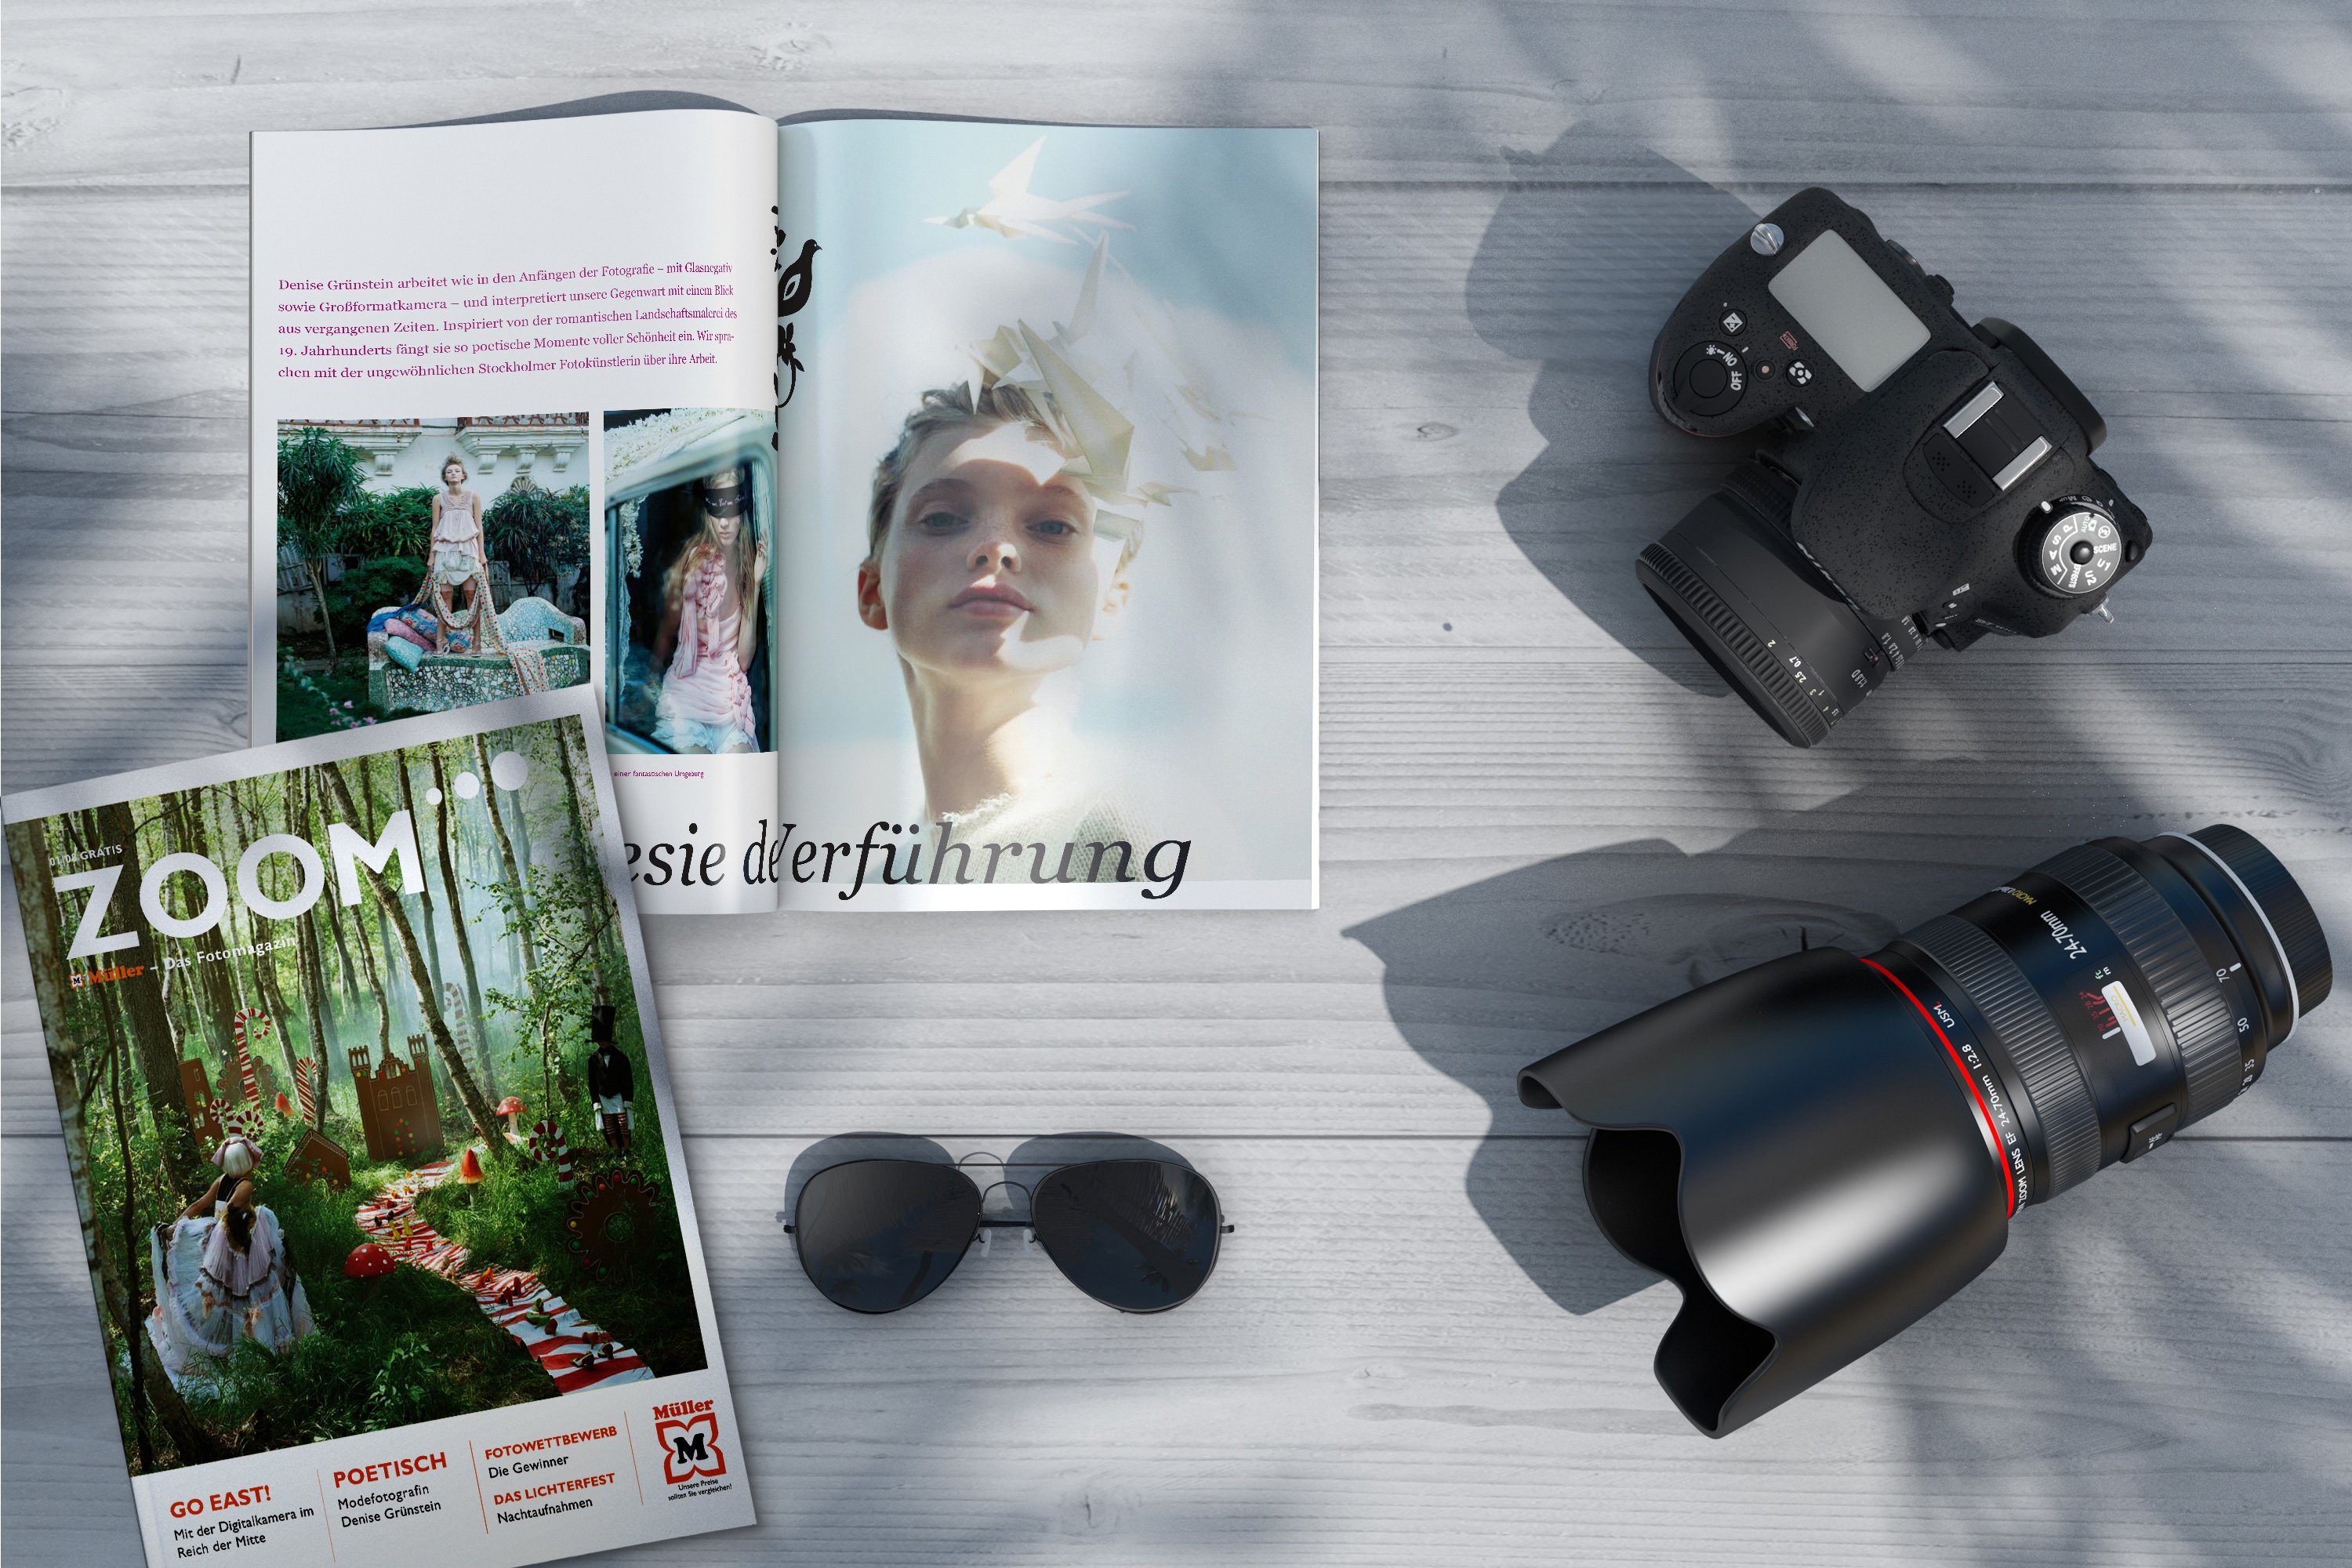 Excite Werbeagentur Müller Zoom Magazine und Kameraobjektive